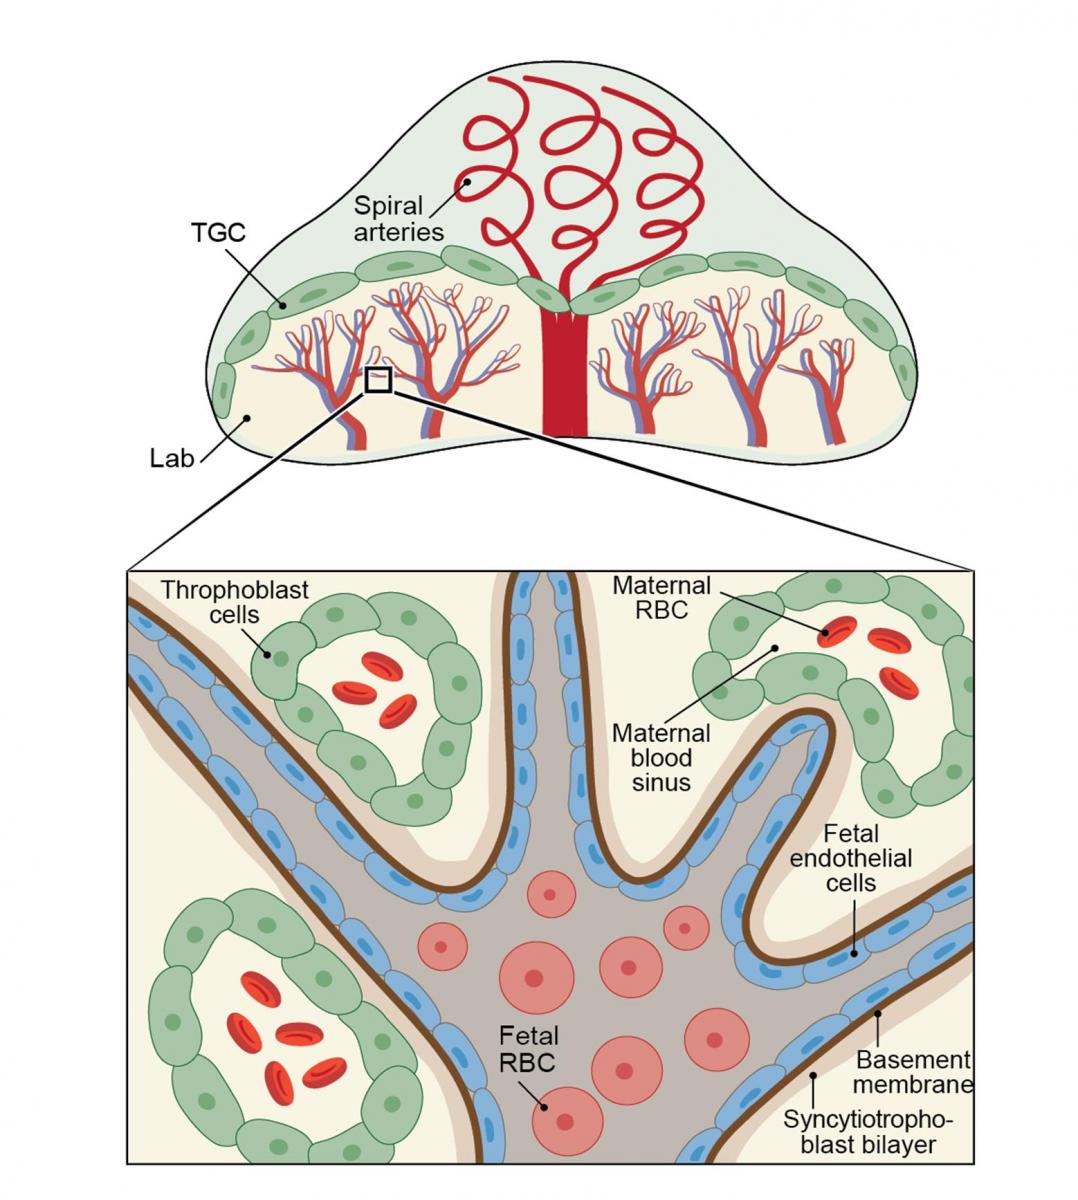 כלי הדם של האם ושל העובר בשליה, ותאים עובריים (טרופובלסטים) אשר חדרו לכלי הדם של האם